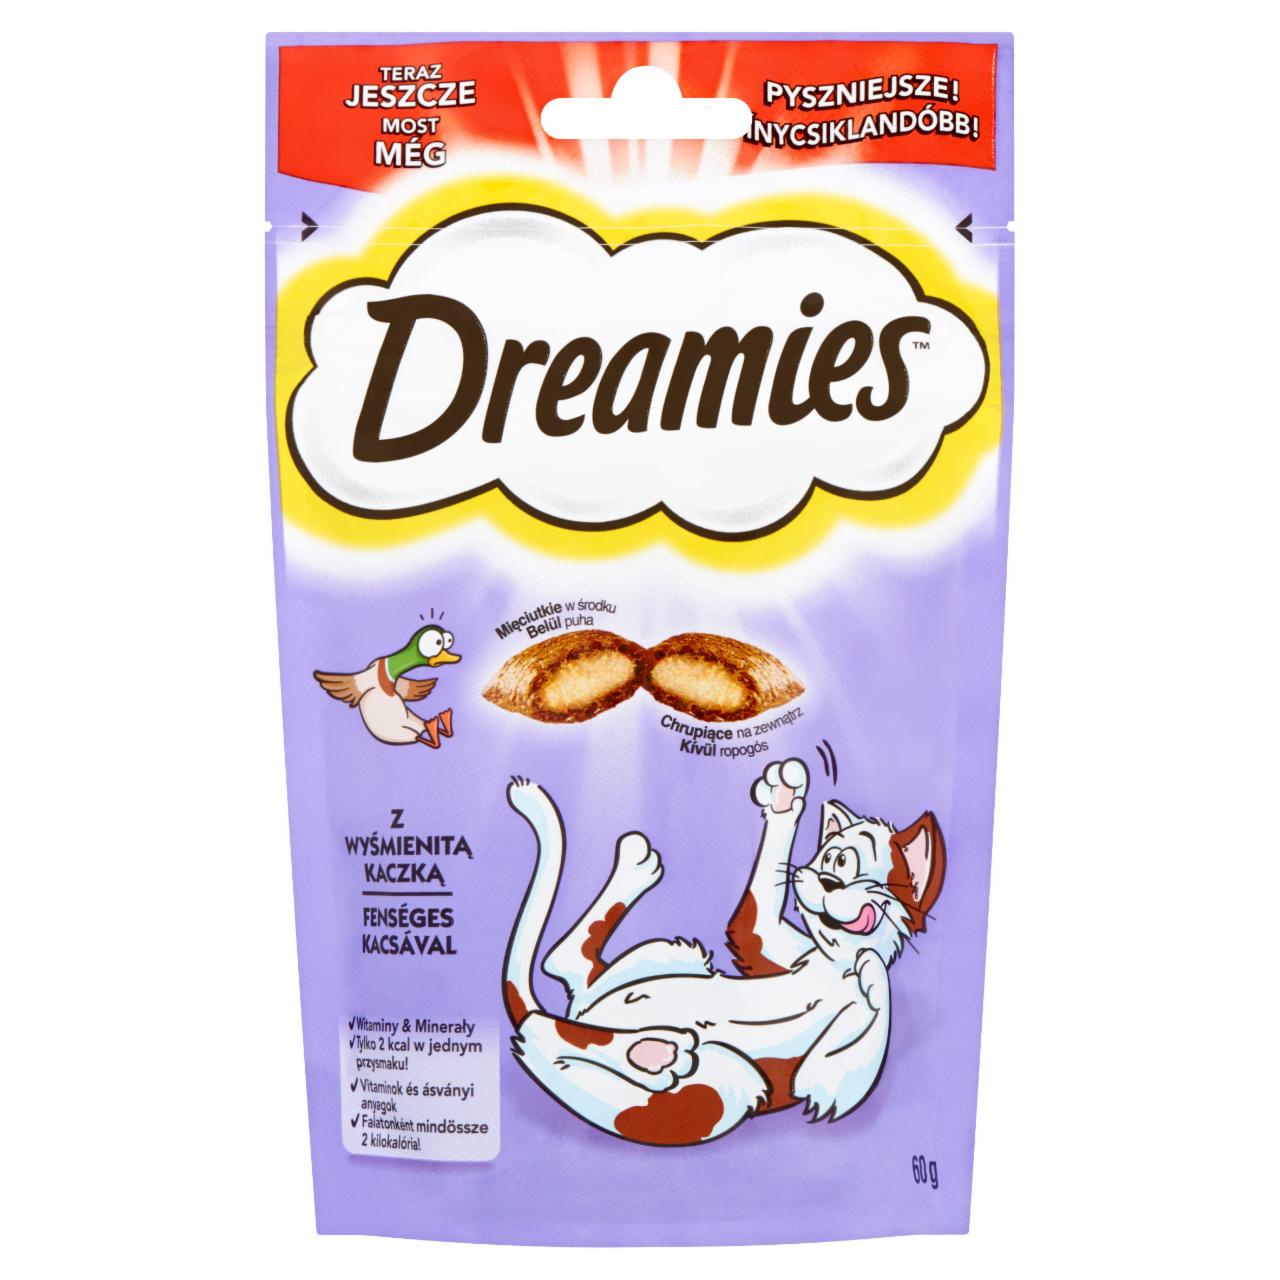 Képek - Dreamies kiegészítő táp macskáknak és 8 hetesnél idősebb kölyökmacskáknak kacsával 60 g